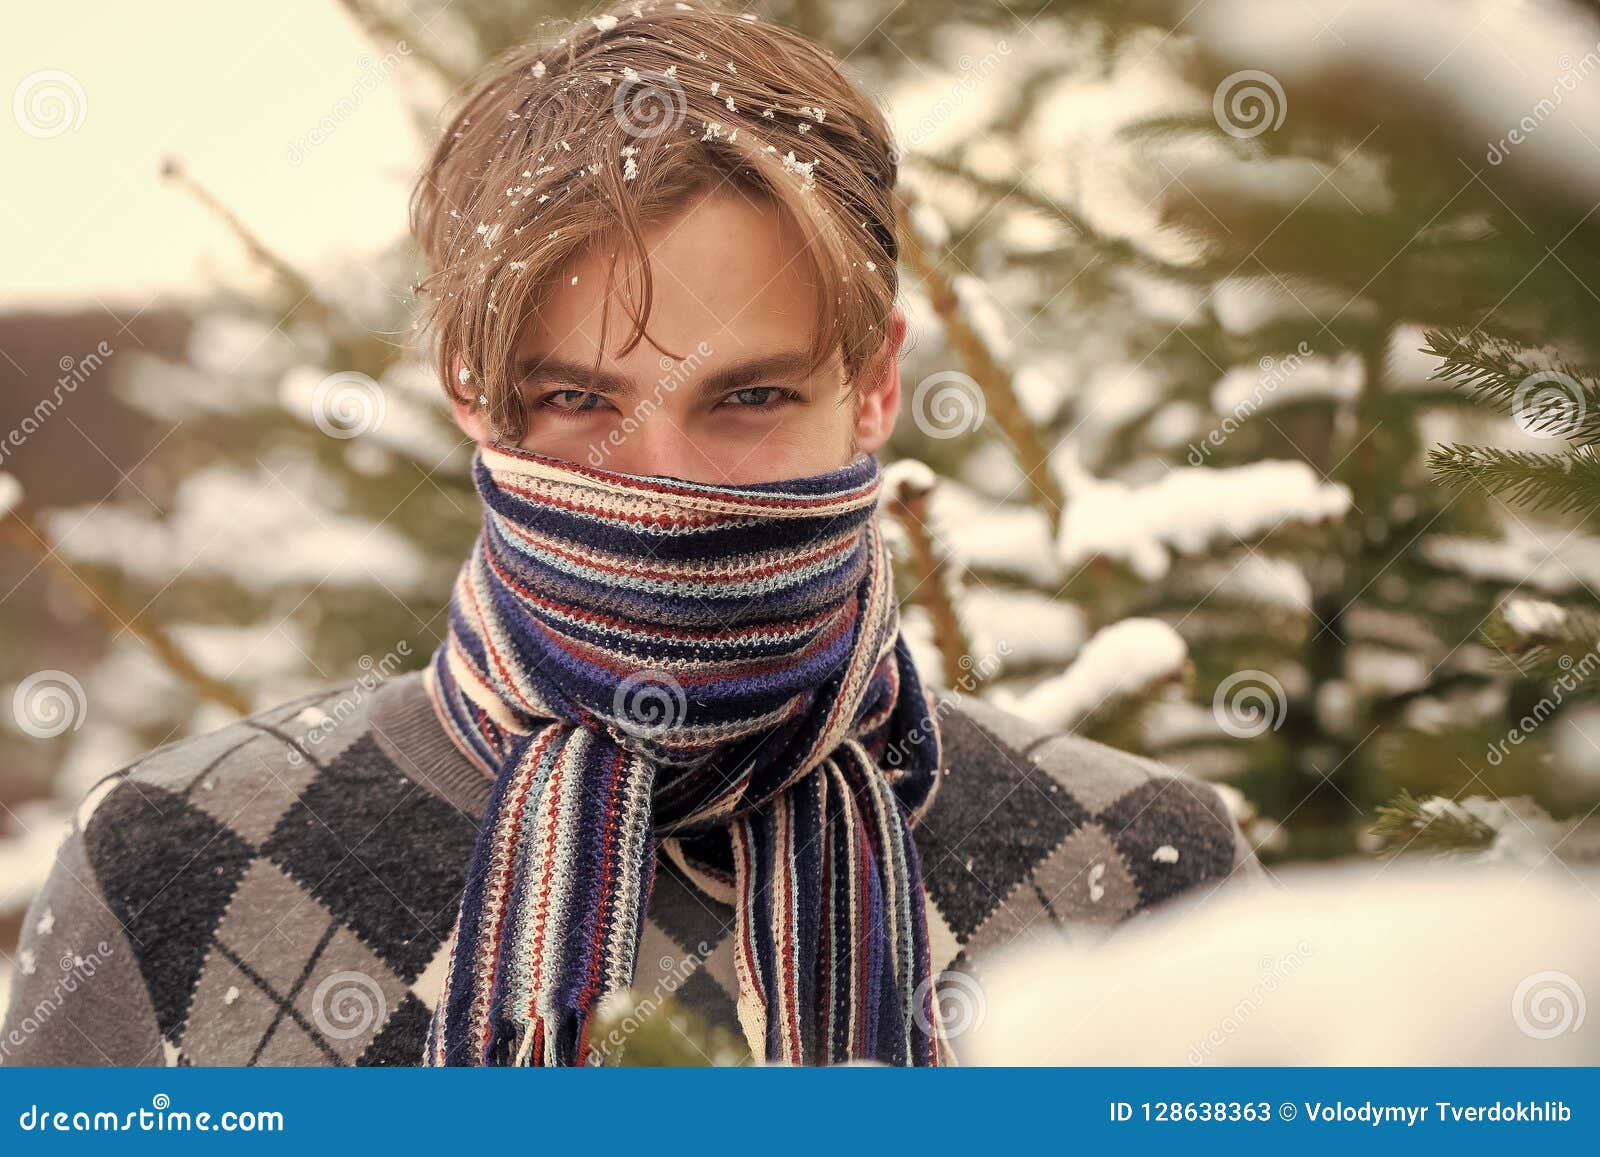 Закрыть лицо шарф. Человек в шарфе на лице. Шарф на человеке. Мужчина с шарфом на лице. Зимний шарф на лице.